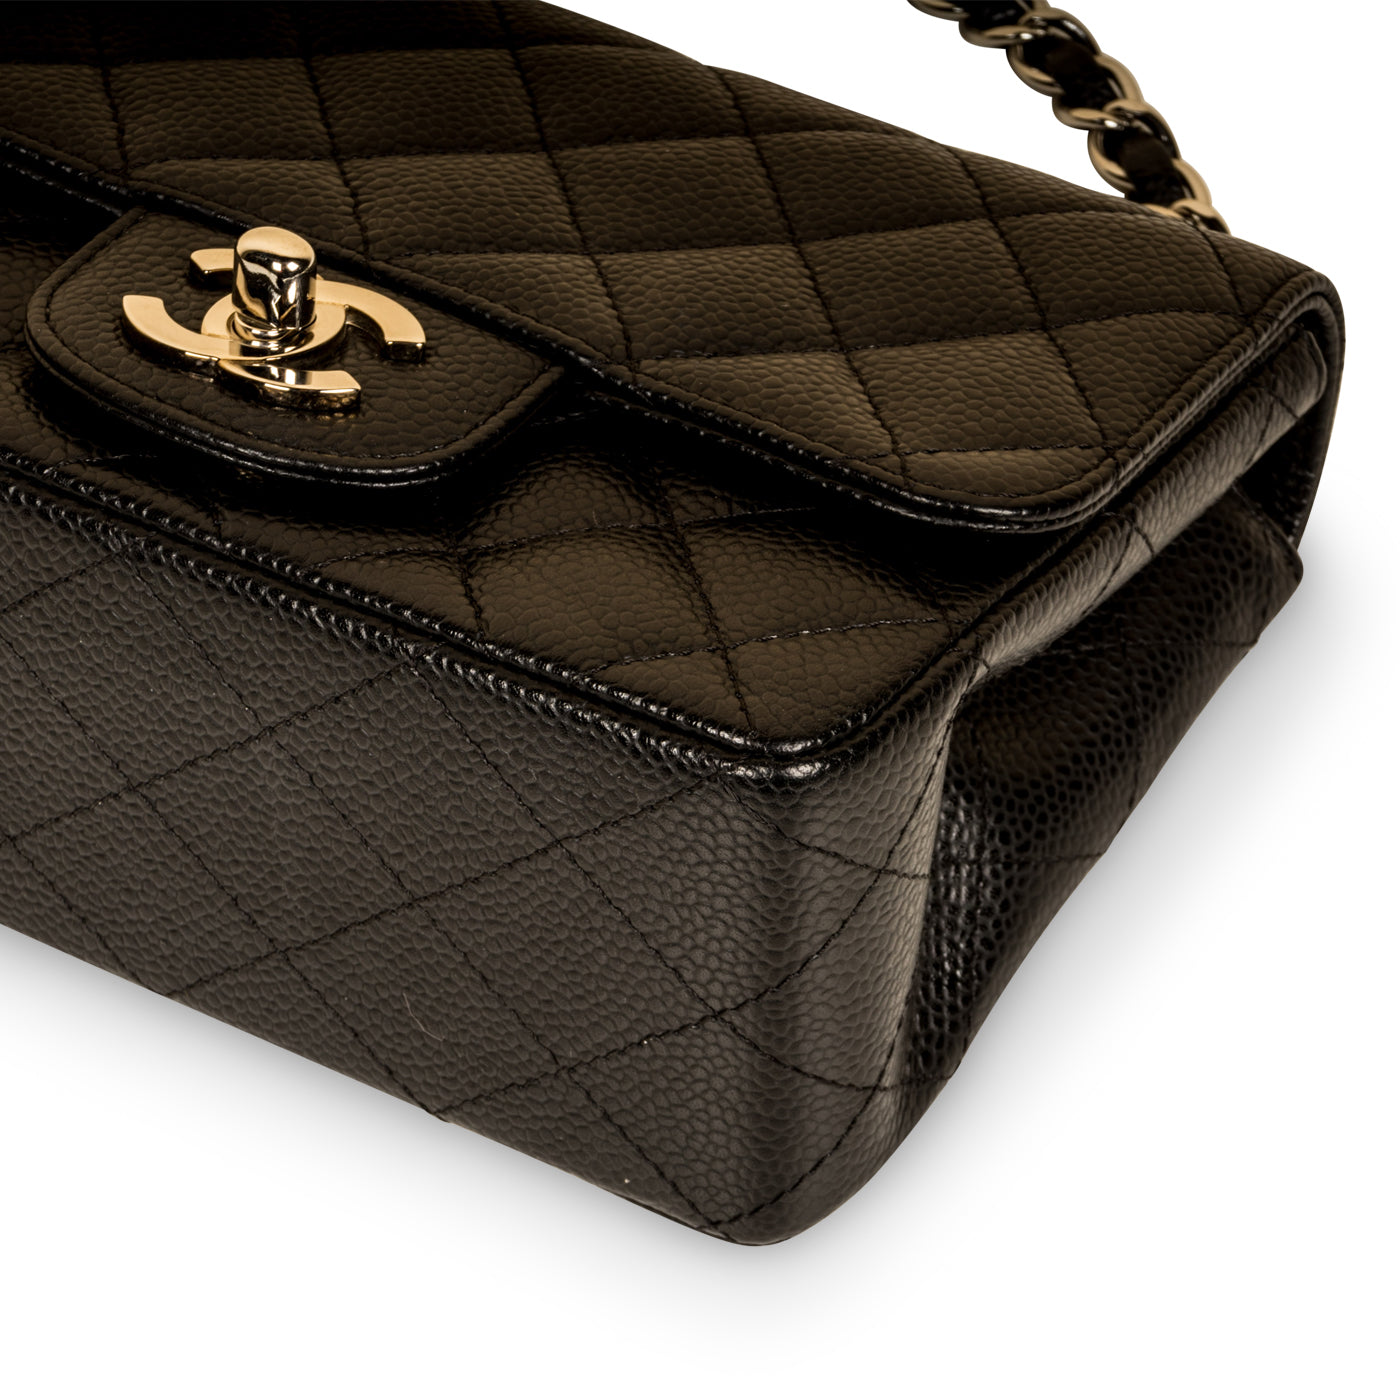 Chanel Mini Square Black Caviar Gold - Designer WishBags